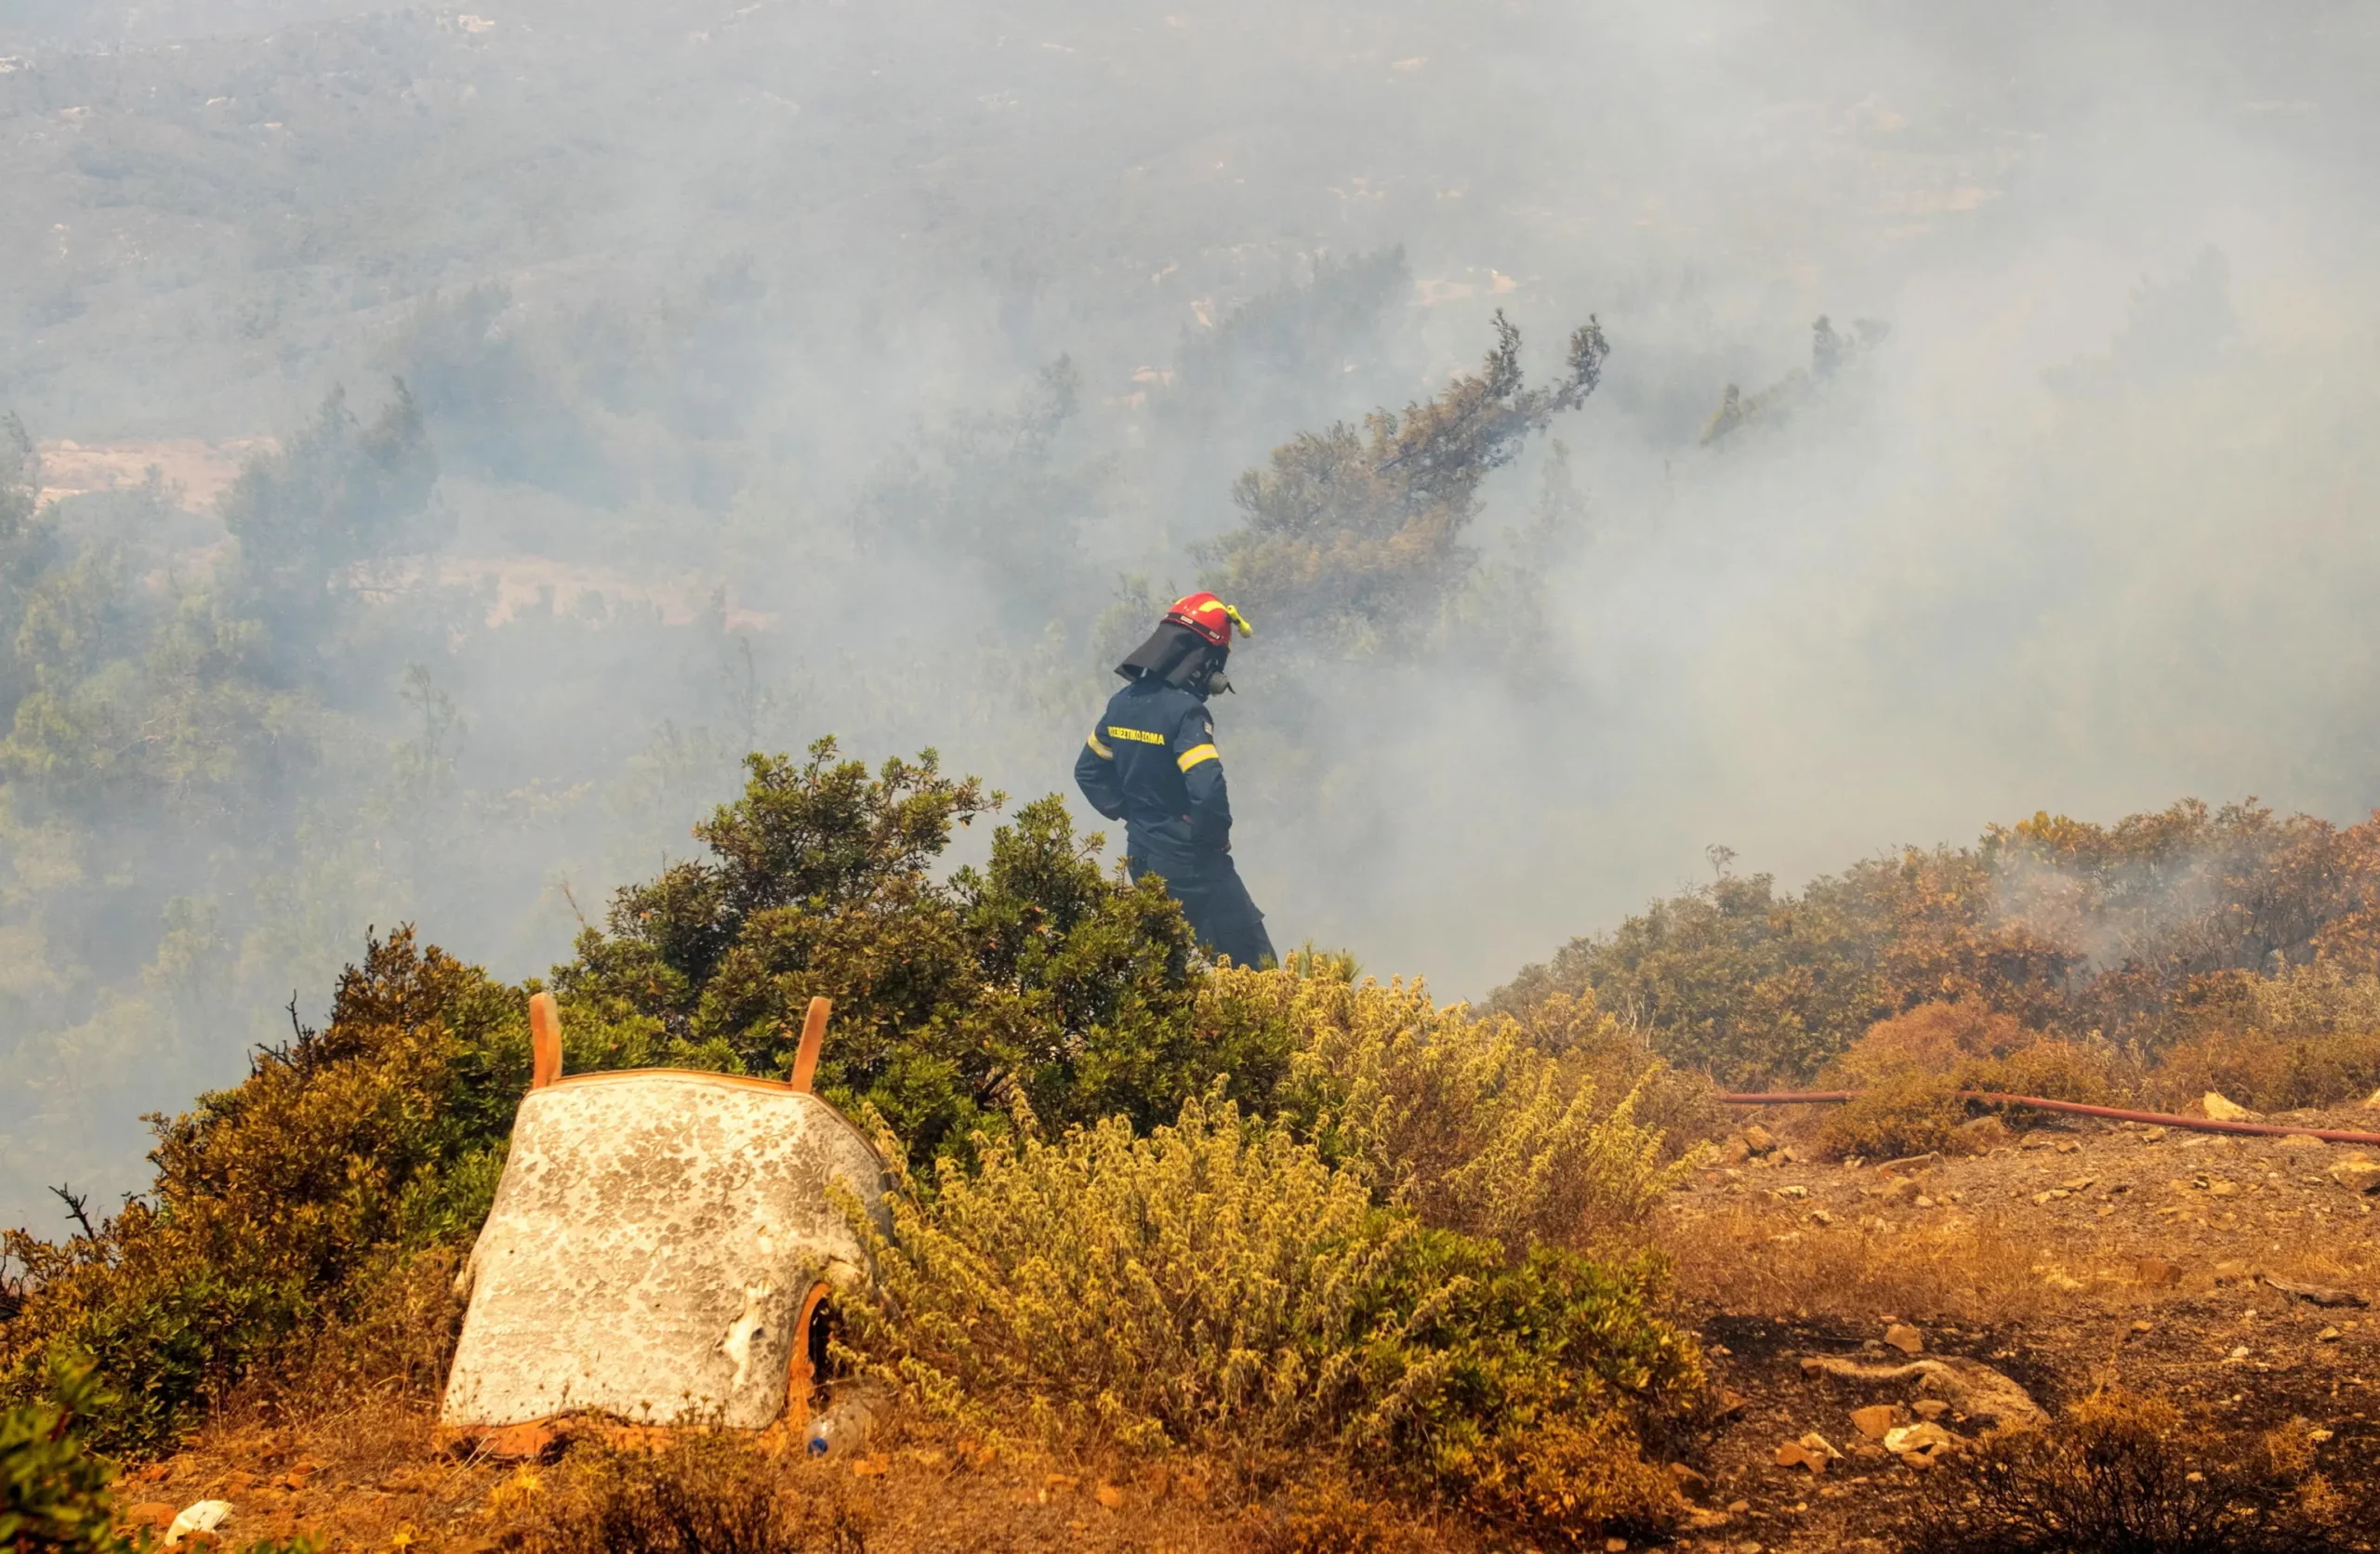 Grecia, canadair si schianta al suolo: era in missione per spegnere un incendio